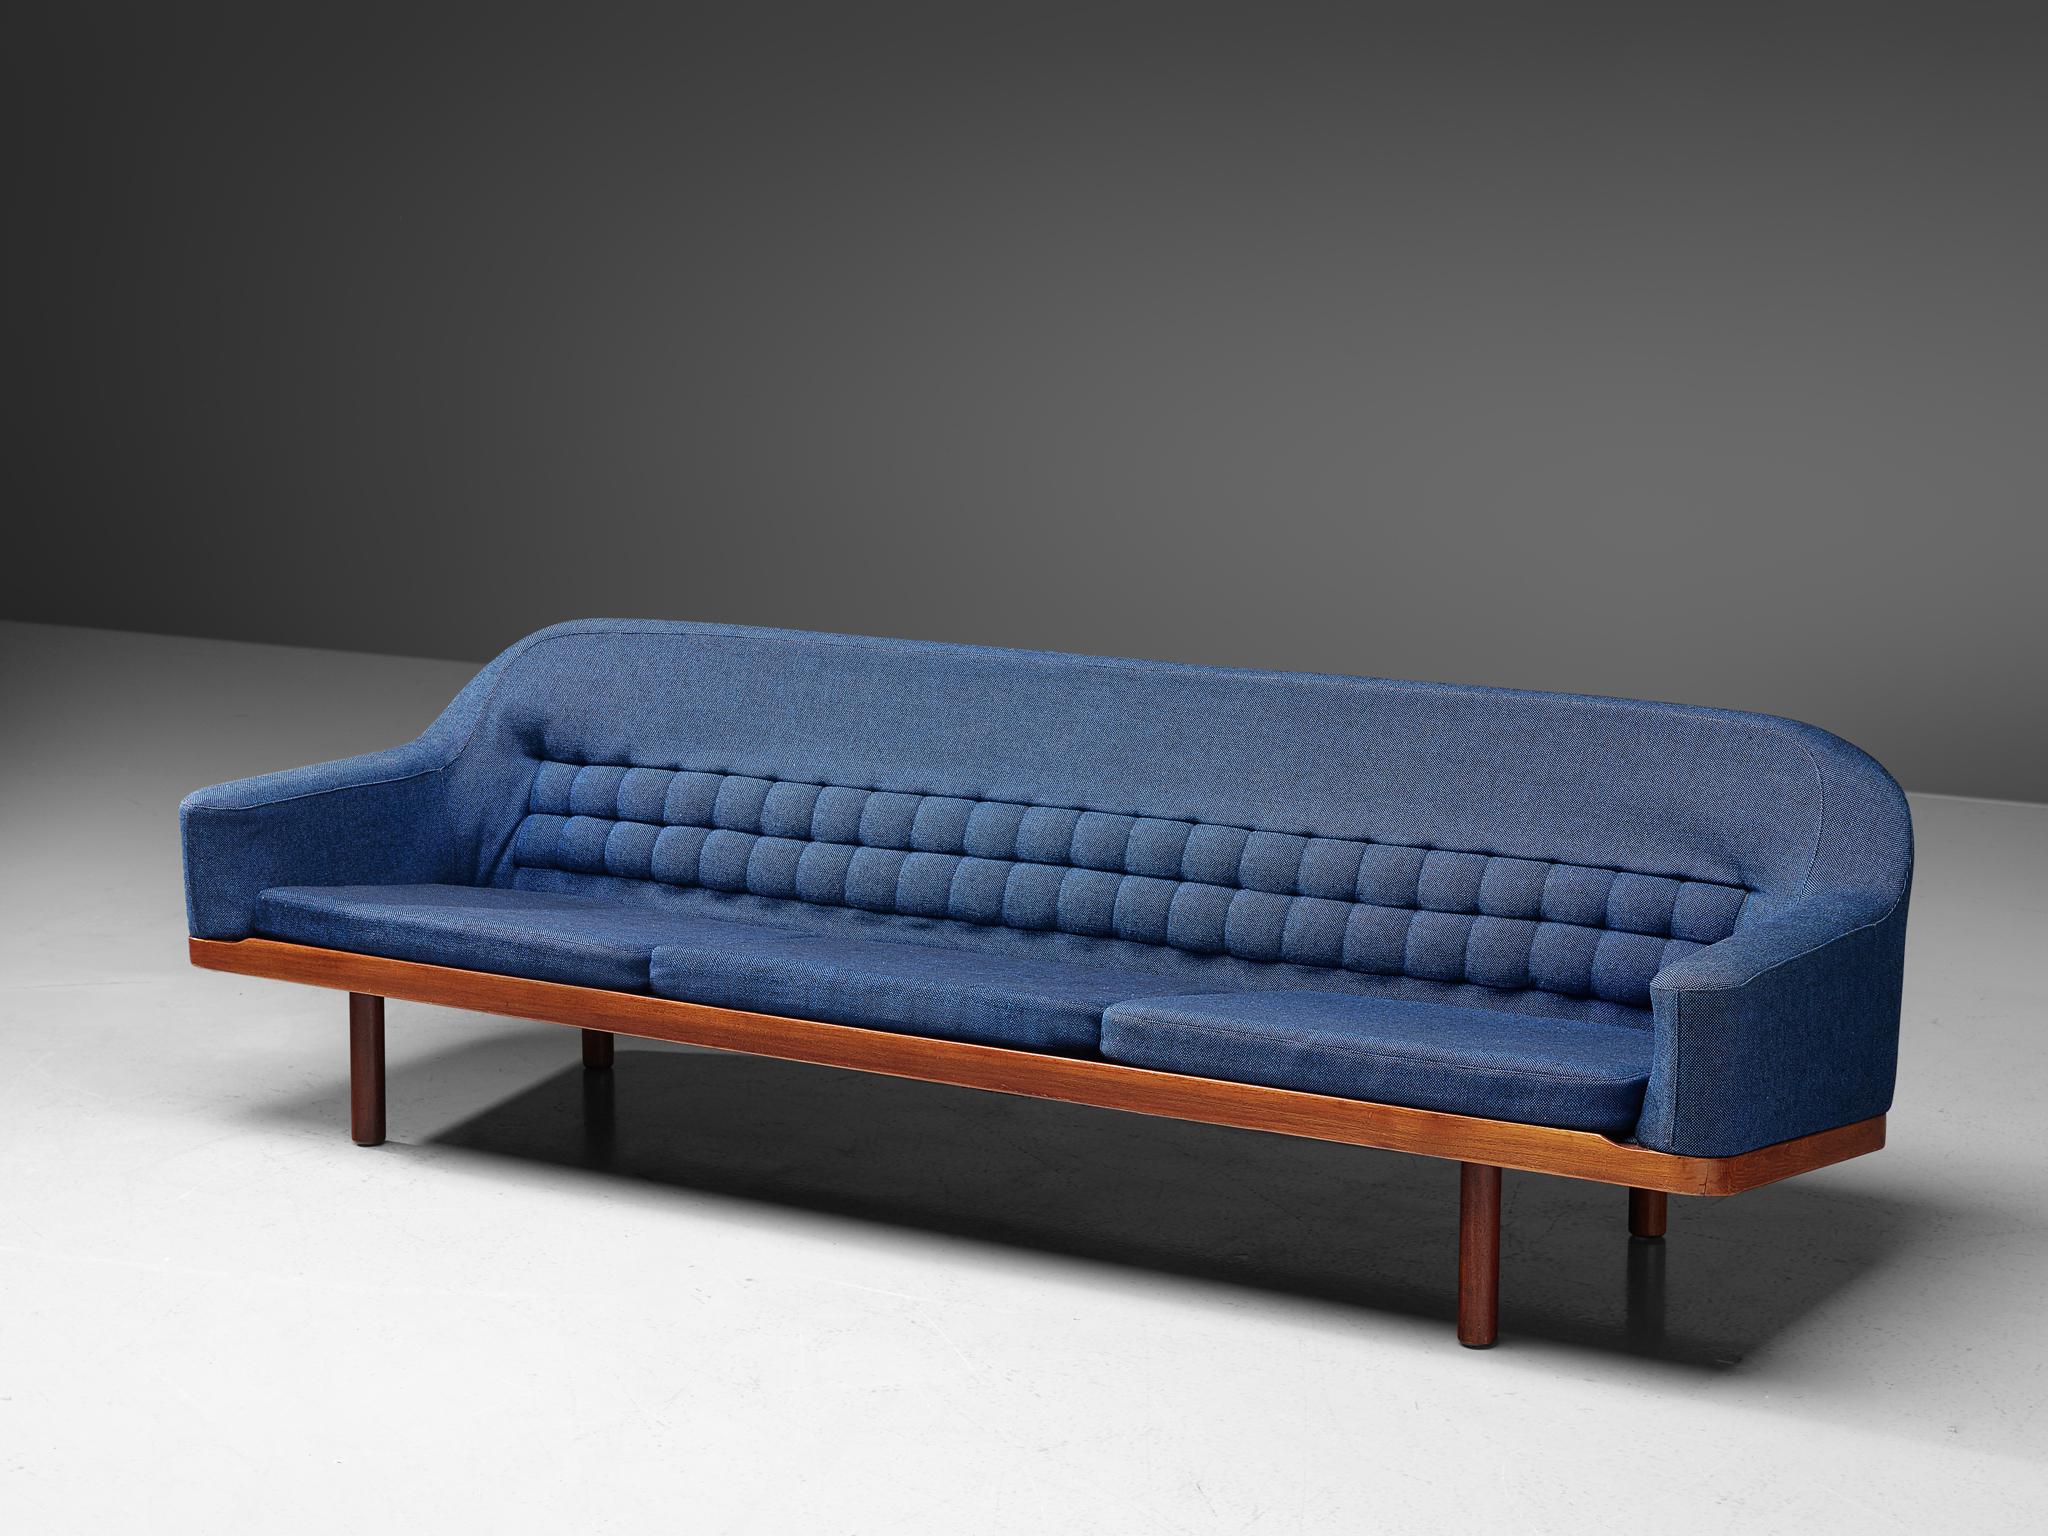 Arne Halvorsen, canapé, modèle '2010', teck, tissu bleu, Norvège, années 1960

Un grand canapé conçu par le designer norvégien Arne Halvorsen. Ce canapé se caractérise par son dossier tufté de forme géométrique associé à des accoudoirs joliment